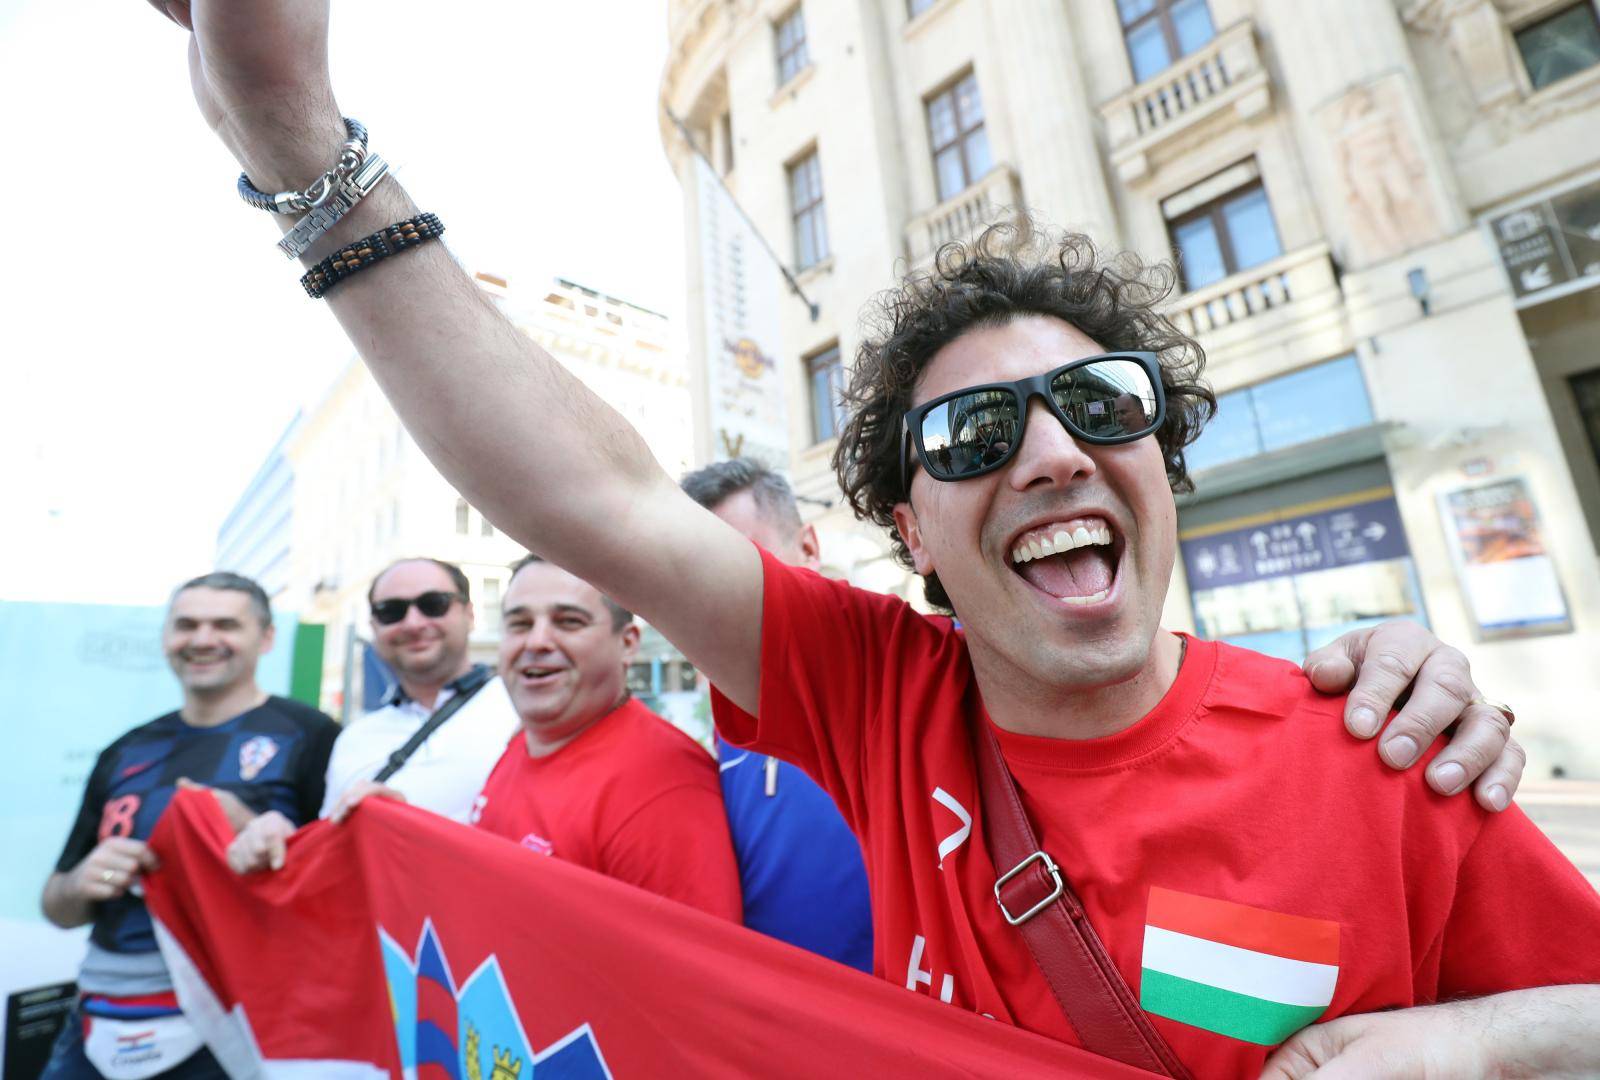 BudimpeÅ¡ta: NavijaÄi na ulicama spremni za utakmicu MaÄarska - Hrvatska